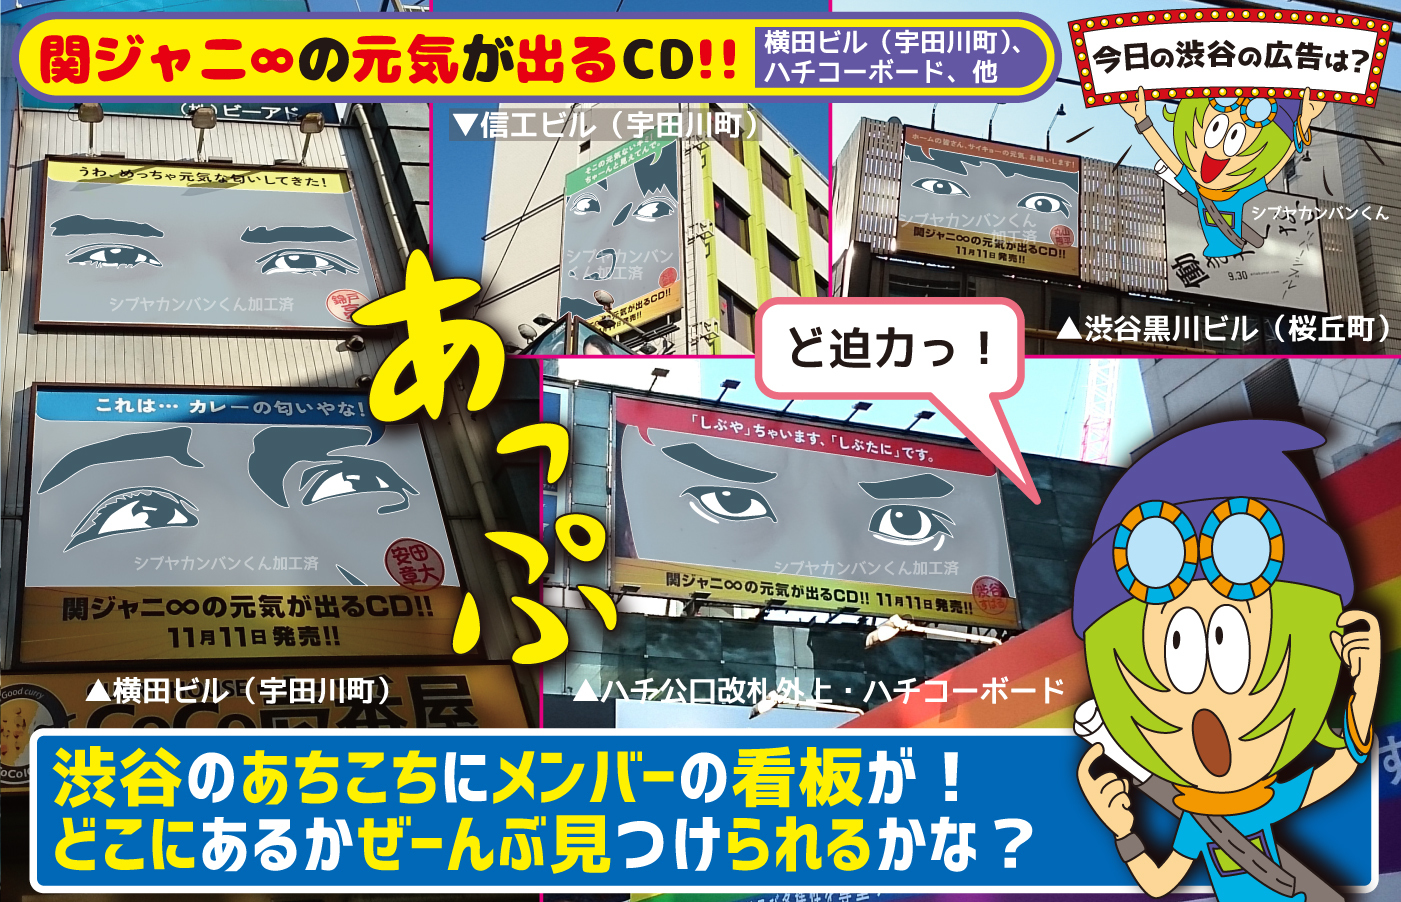 関ジャニ の元気が出るcd 渋谷のあちこちにメンバーの看板が どこにあるかぜーんぶ見つけられるかな 今日の渋谷の広告は 看板 ポスター デジタル 車